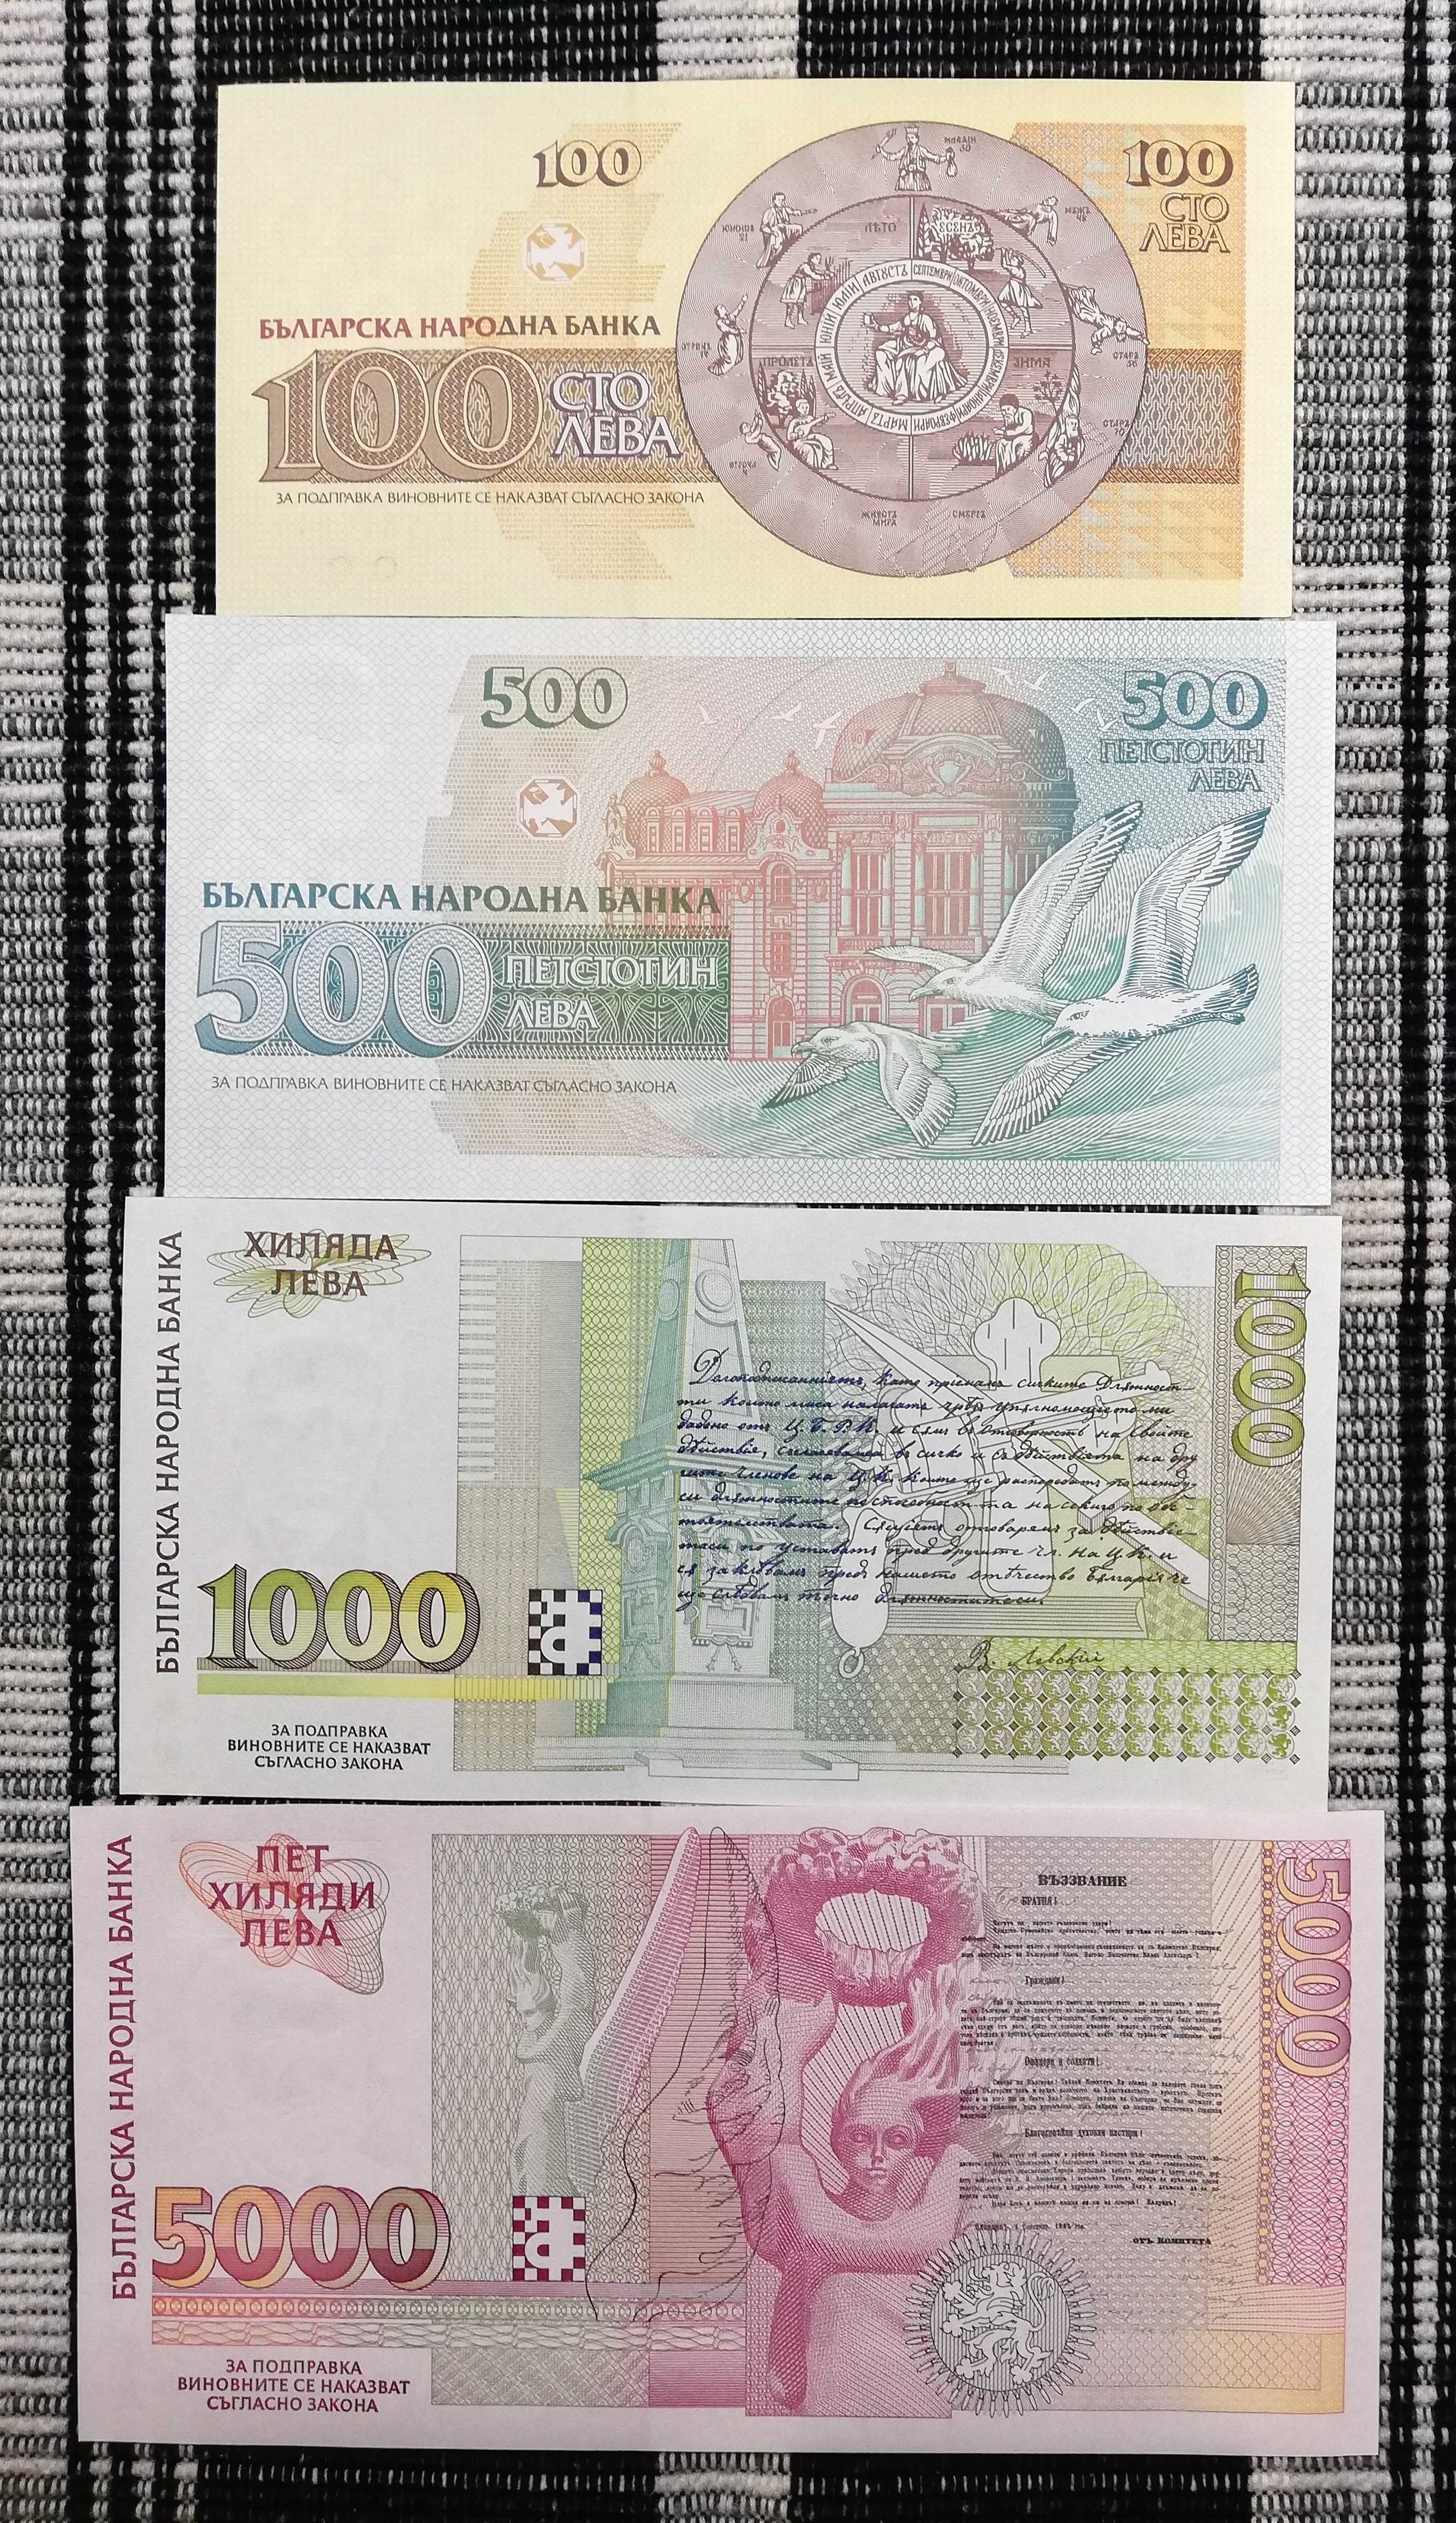 Лот банкноти "Република България I - 1991-1997" - нециркулирали (UNC)